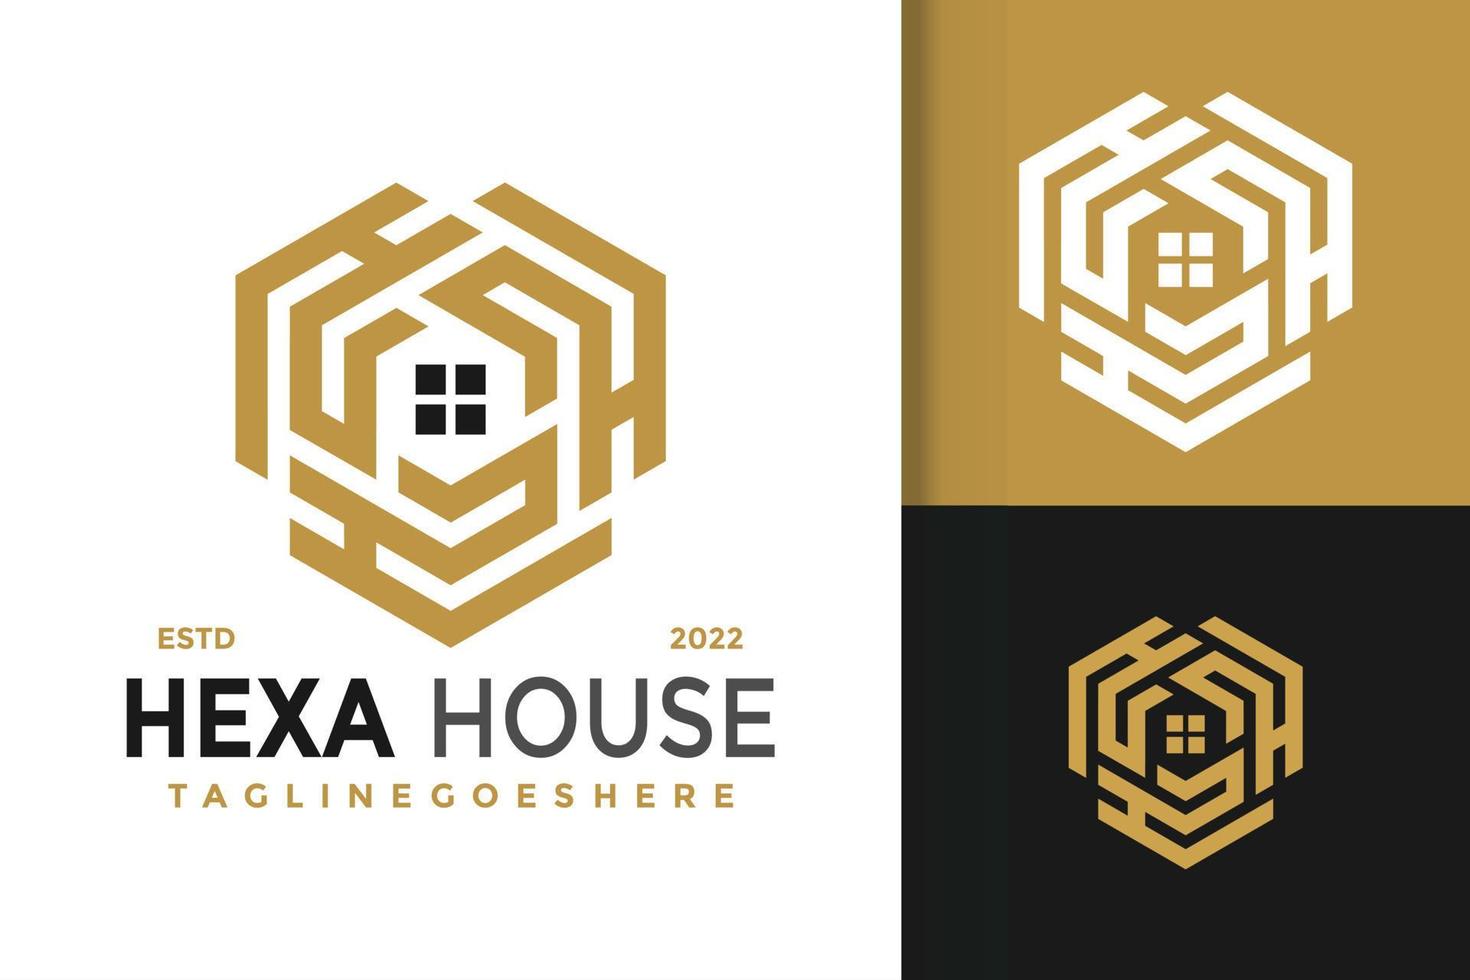 h lettre hexagone maison logo design, image vectorielle de logos d'identité de marque, logo moderne, modèles d'illustration vectorielle de logos vecteur